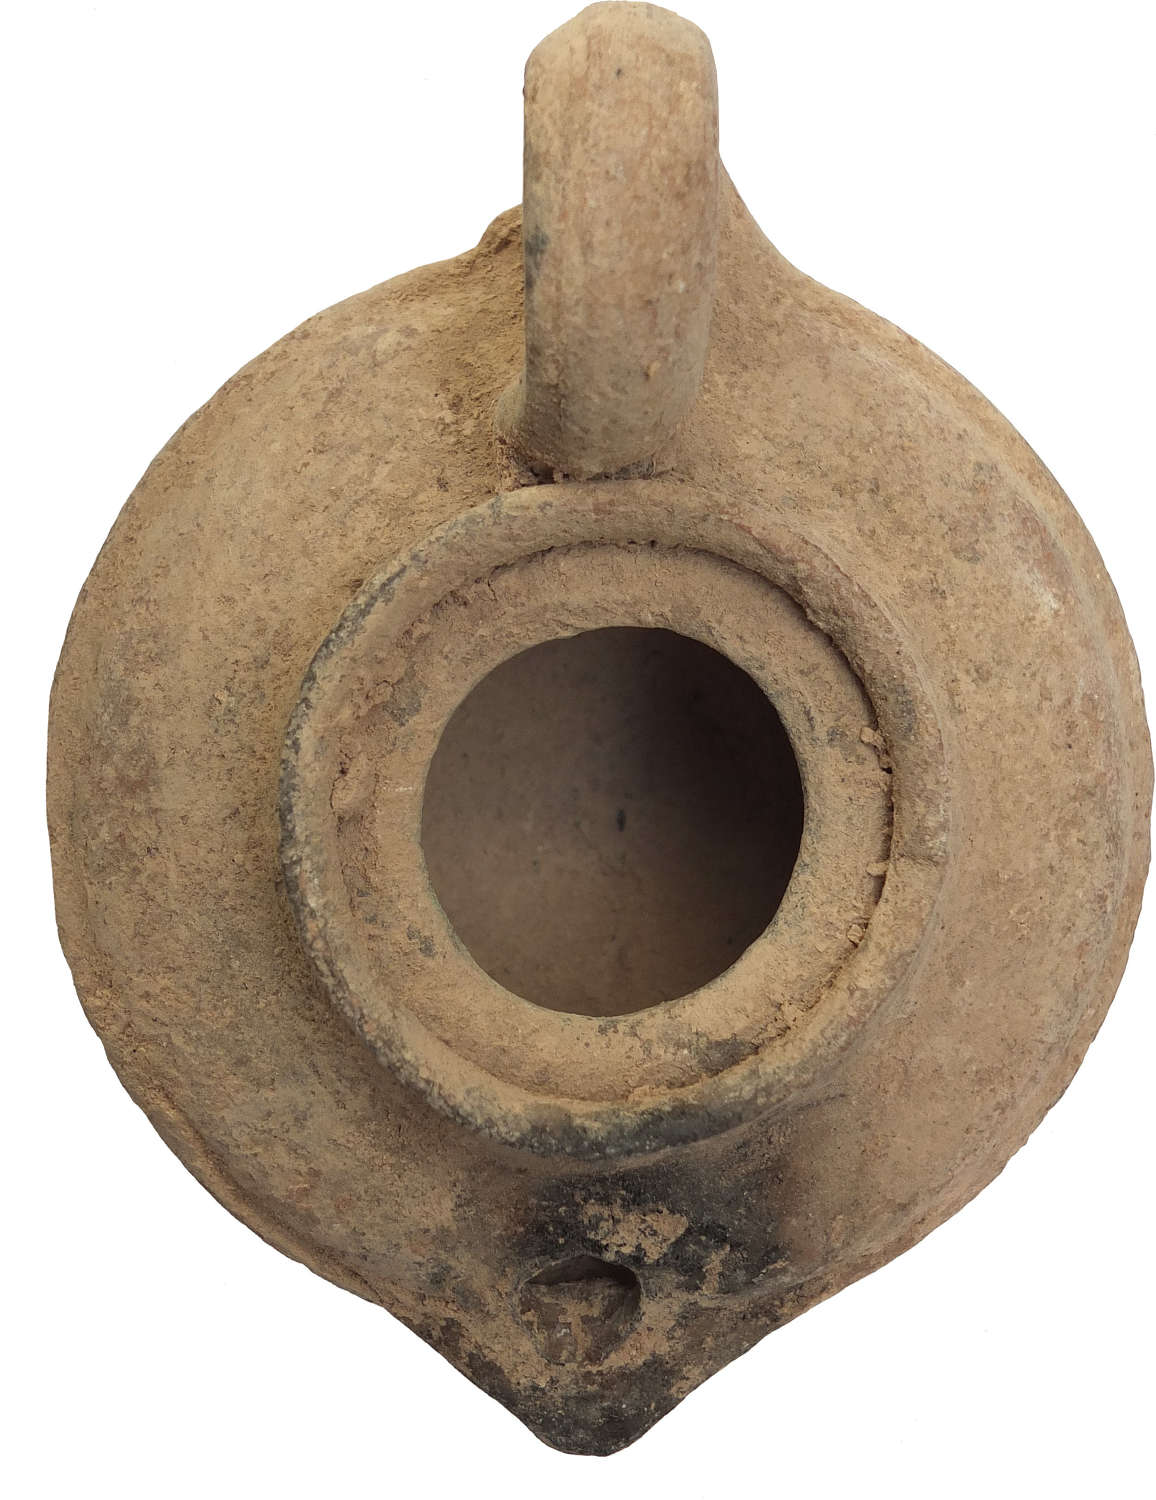 An Islamic fawn pottery oil lamp, c. 800-1100 A.D.